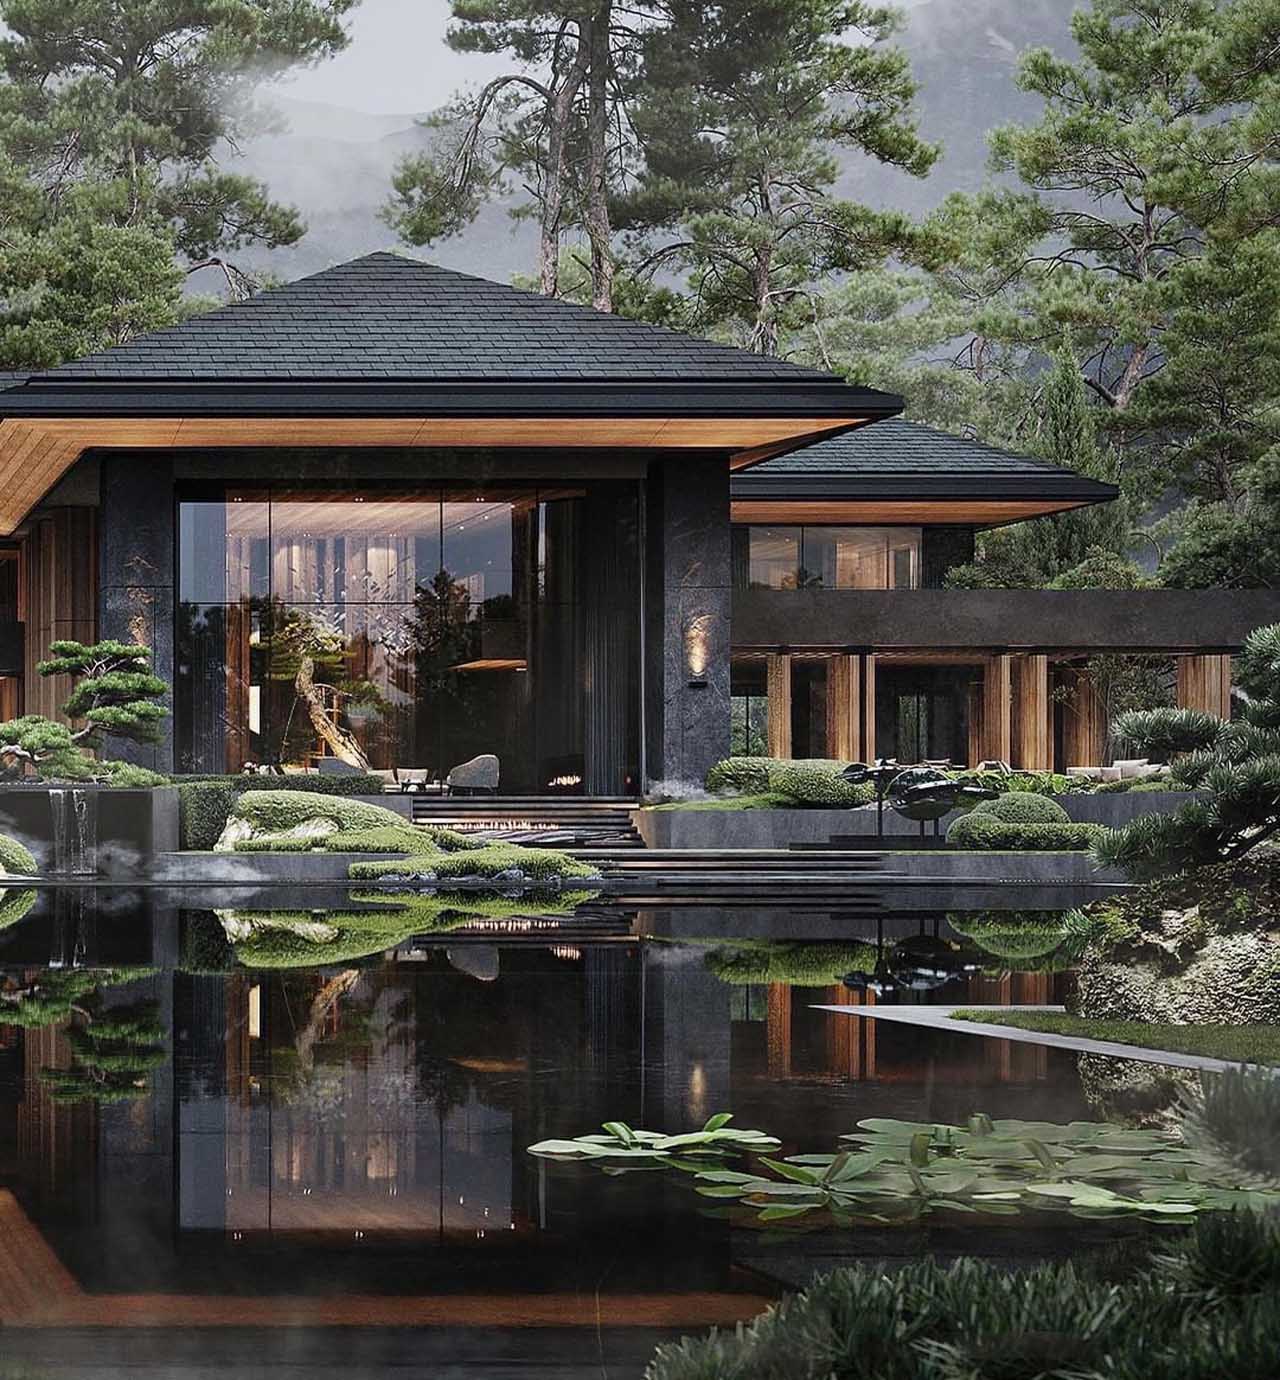 Kiến trúc và nội thất nhà vườn kiểu Nhật Takumi đã được cập nhật đến năm 2024 với sự kết hợp hoàn hảo giữa phong cách Nhật Bản và hiện đại. Thiết kế đơn giản, tinh tế nhưng đầy tính thẩm mỹ, không gian sống luôn được bao phủ bởi ánh sáng tự nhiên. Hãy cùng tìm hiểu công trình kiến trúc đẹp như tranh vẽ của chúng tôi.